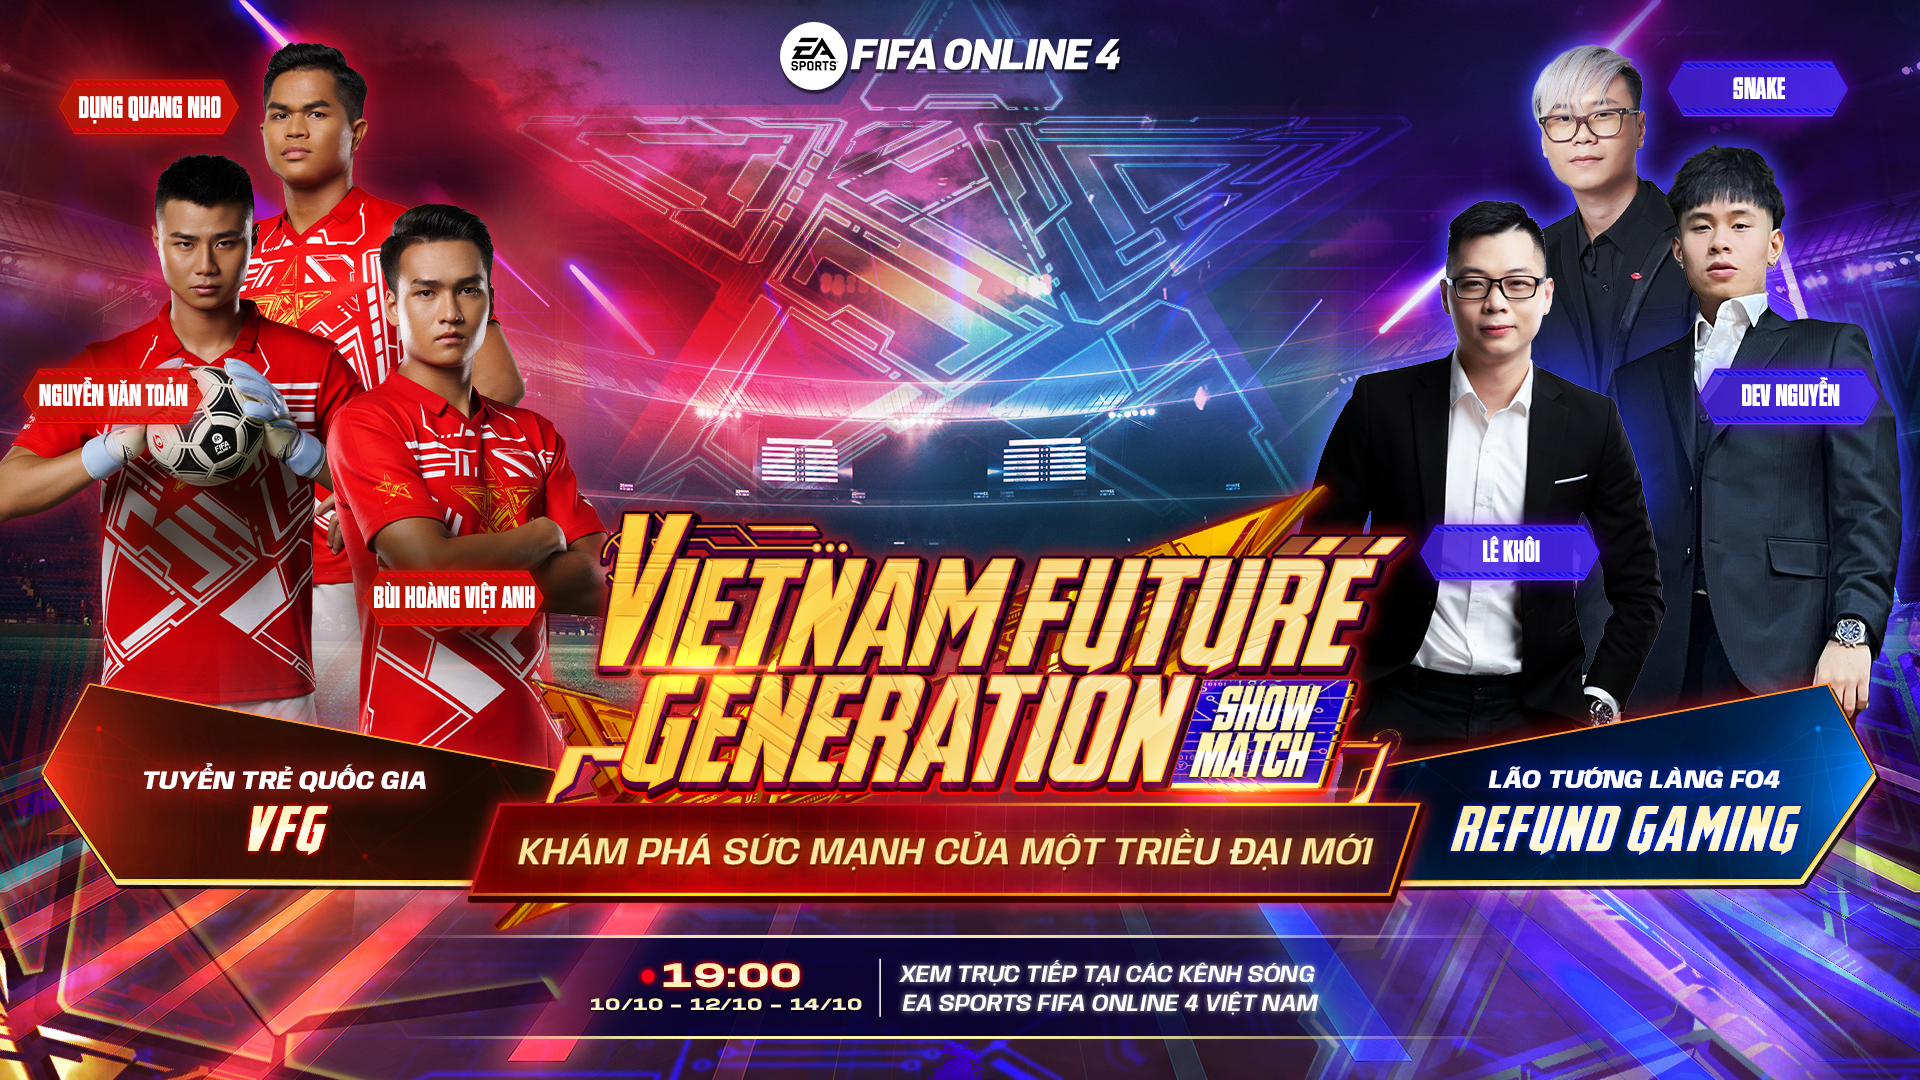 Refund Gaming tranh tài cùng U23 Việt Nam tại FIFA Online 4 VFG Showmatch 2022 1-1665124523905482869955-1665128176556-1665128176991550276880